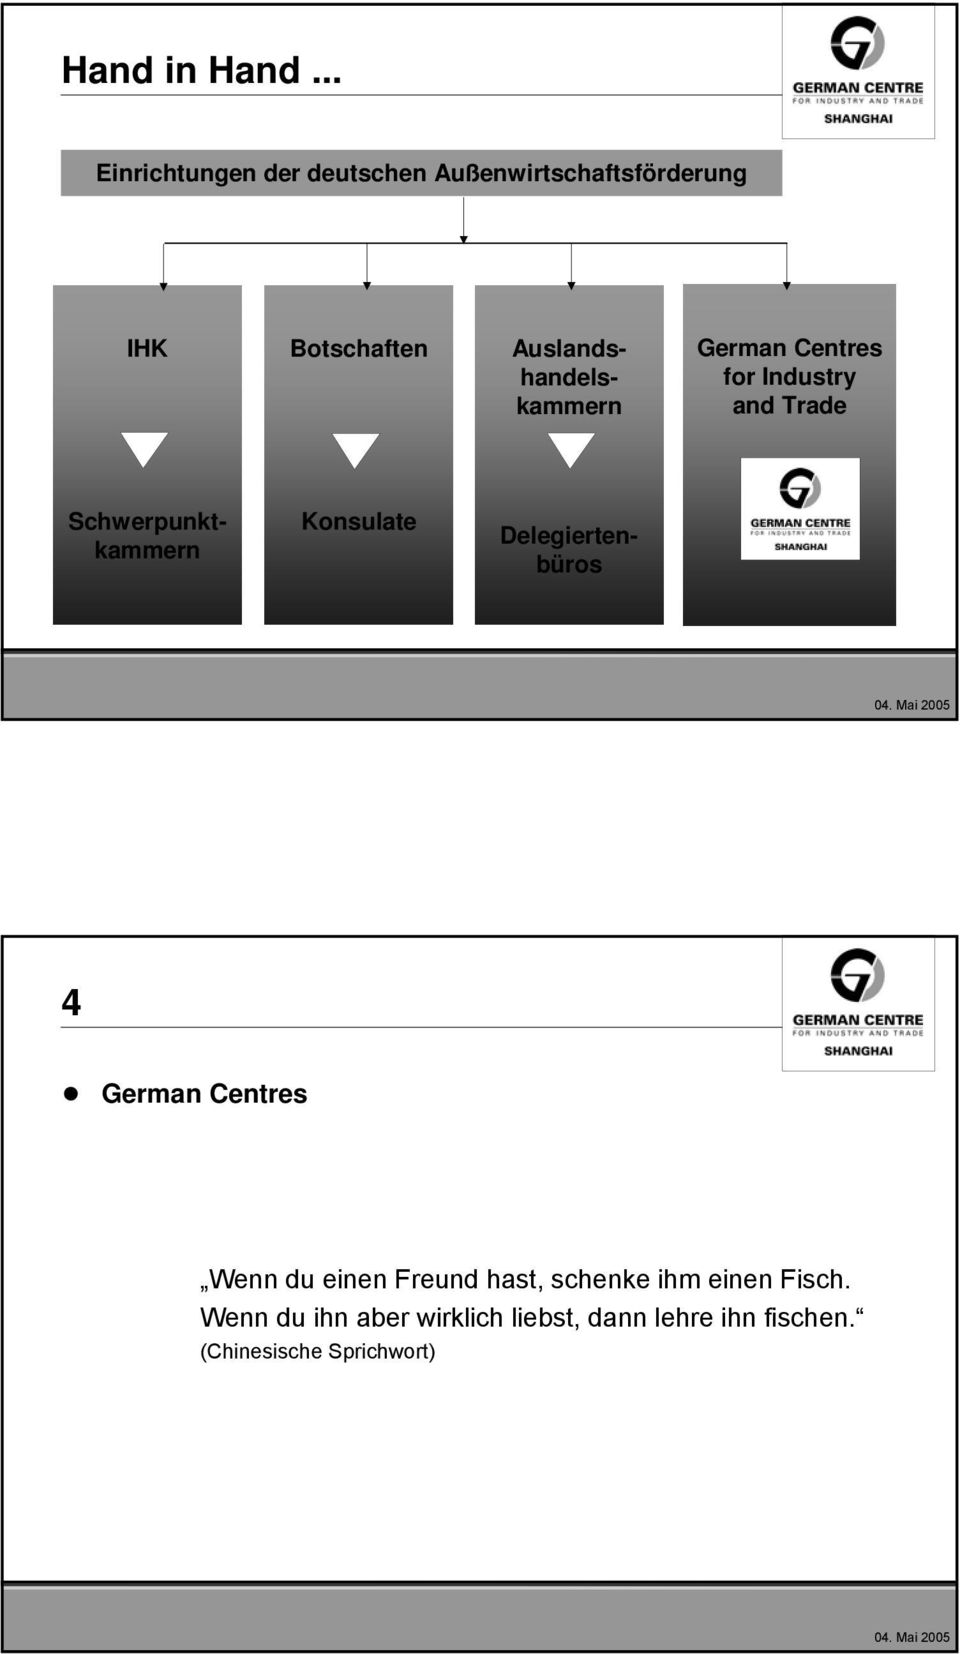 Auslandshandelskammern German Centres for Industry and Trade Schwerpunktkammern